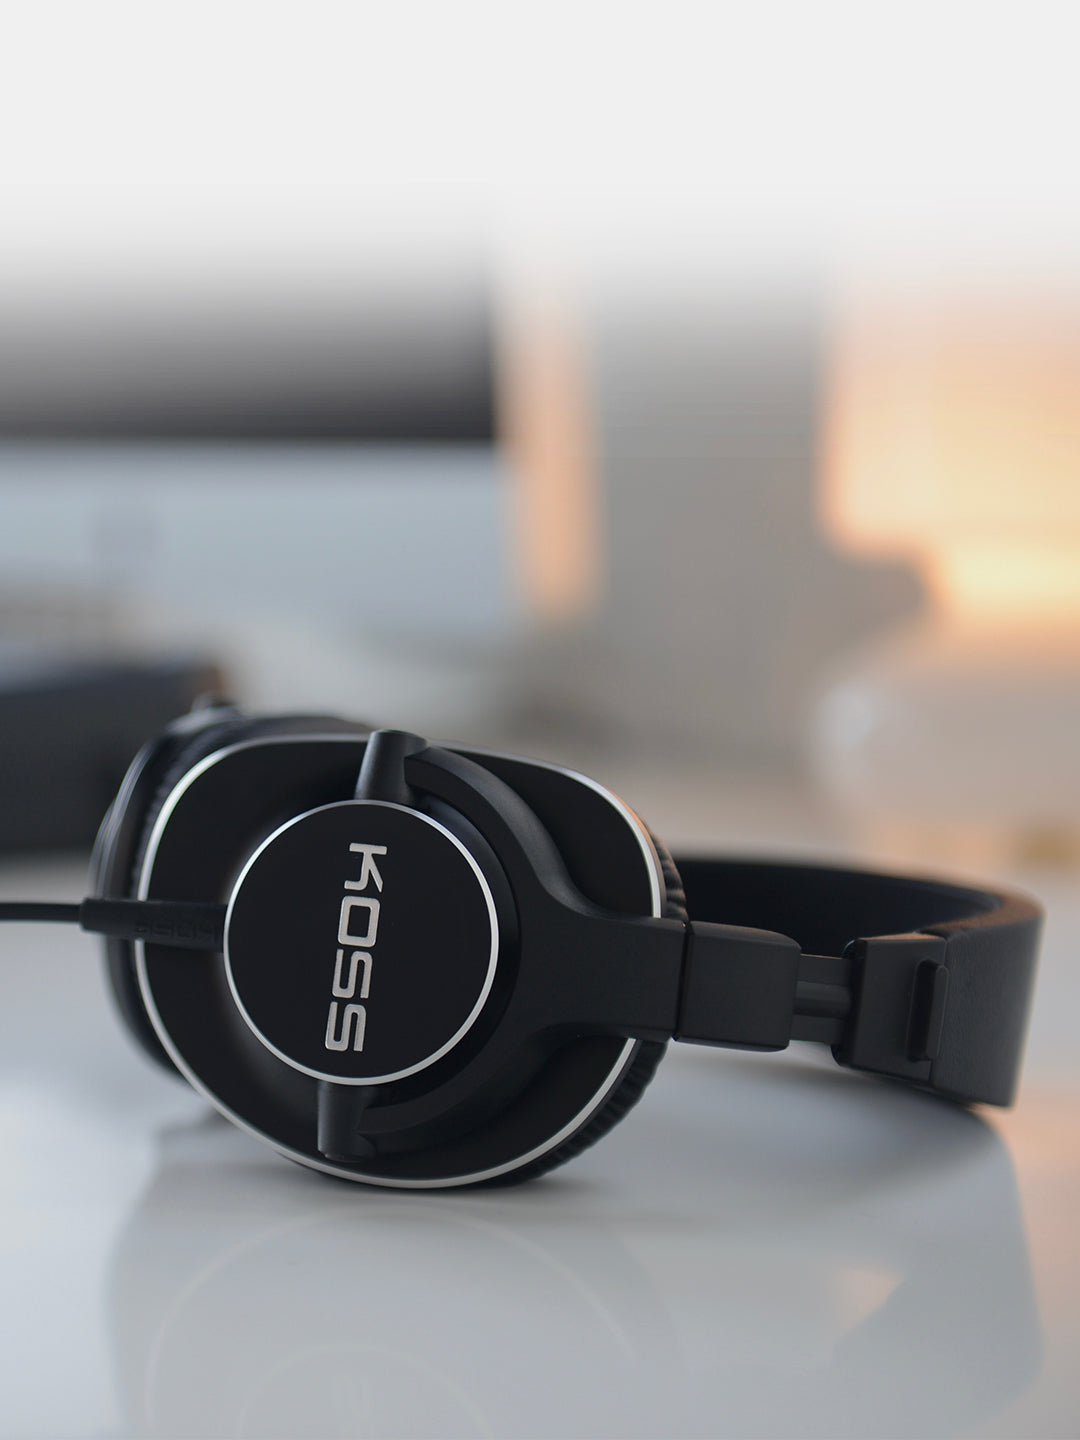 Koss Pro4S Studio Over Ear Headphones